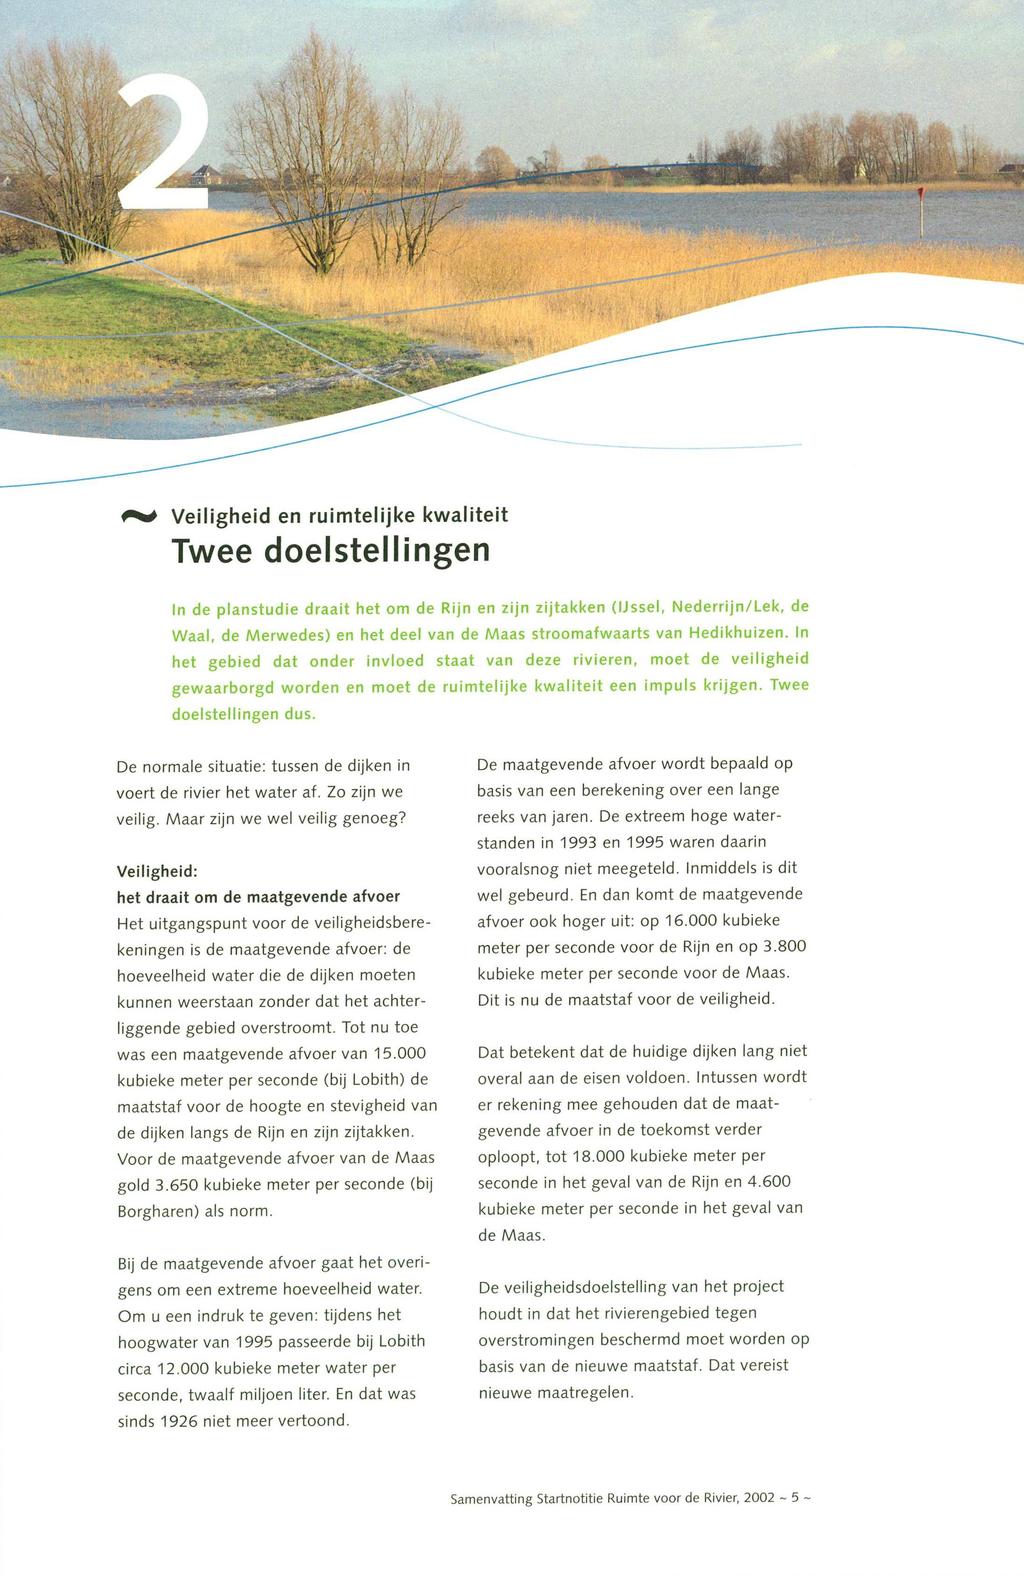 Veiligheid en ruimtelijke kwaliteit Twee doelstellingen Waal, de Merwedes) en het deel van de Maas stroomafwaarts van Hechkhuizen.